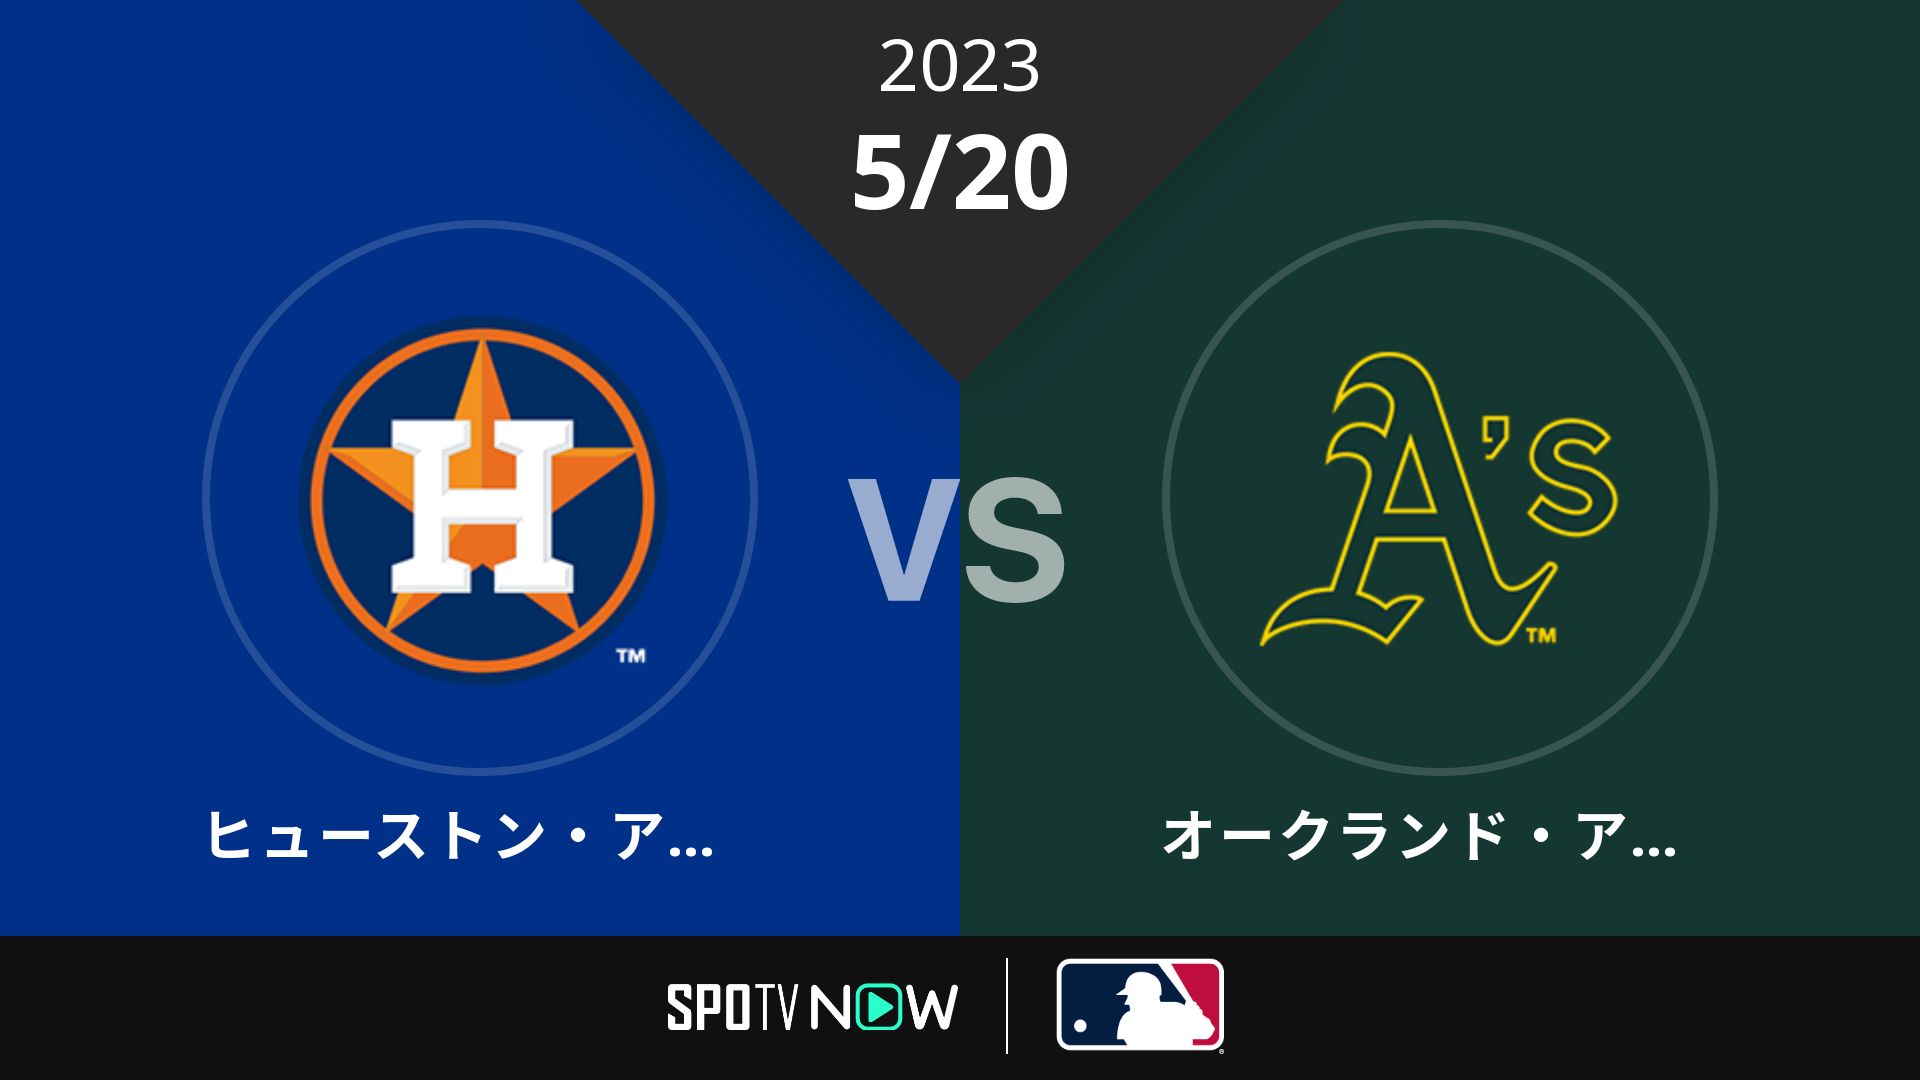 2023/5/20 アストロズ vs アスレチックス [MLB]